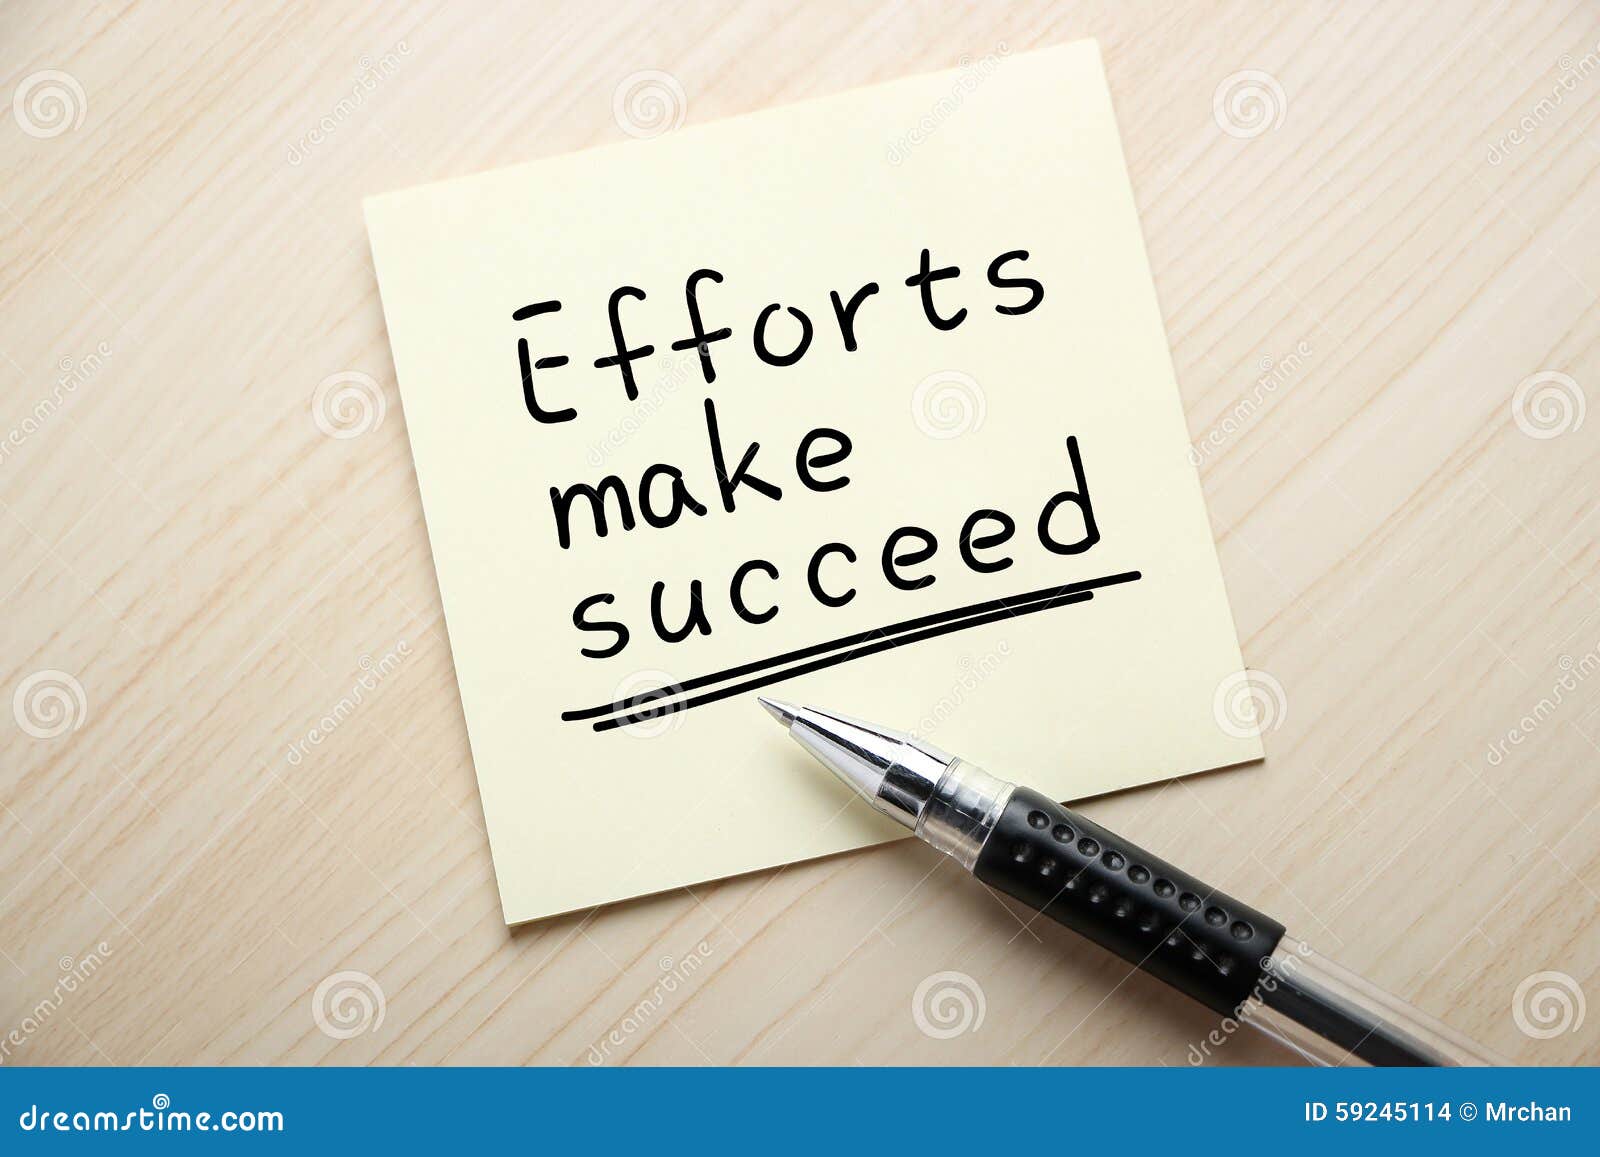 efforts make succeed